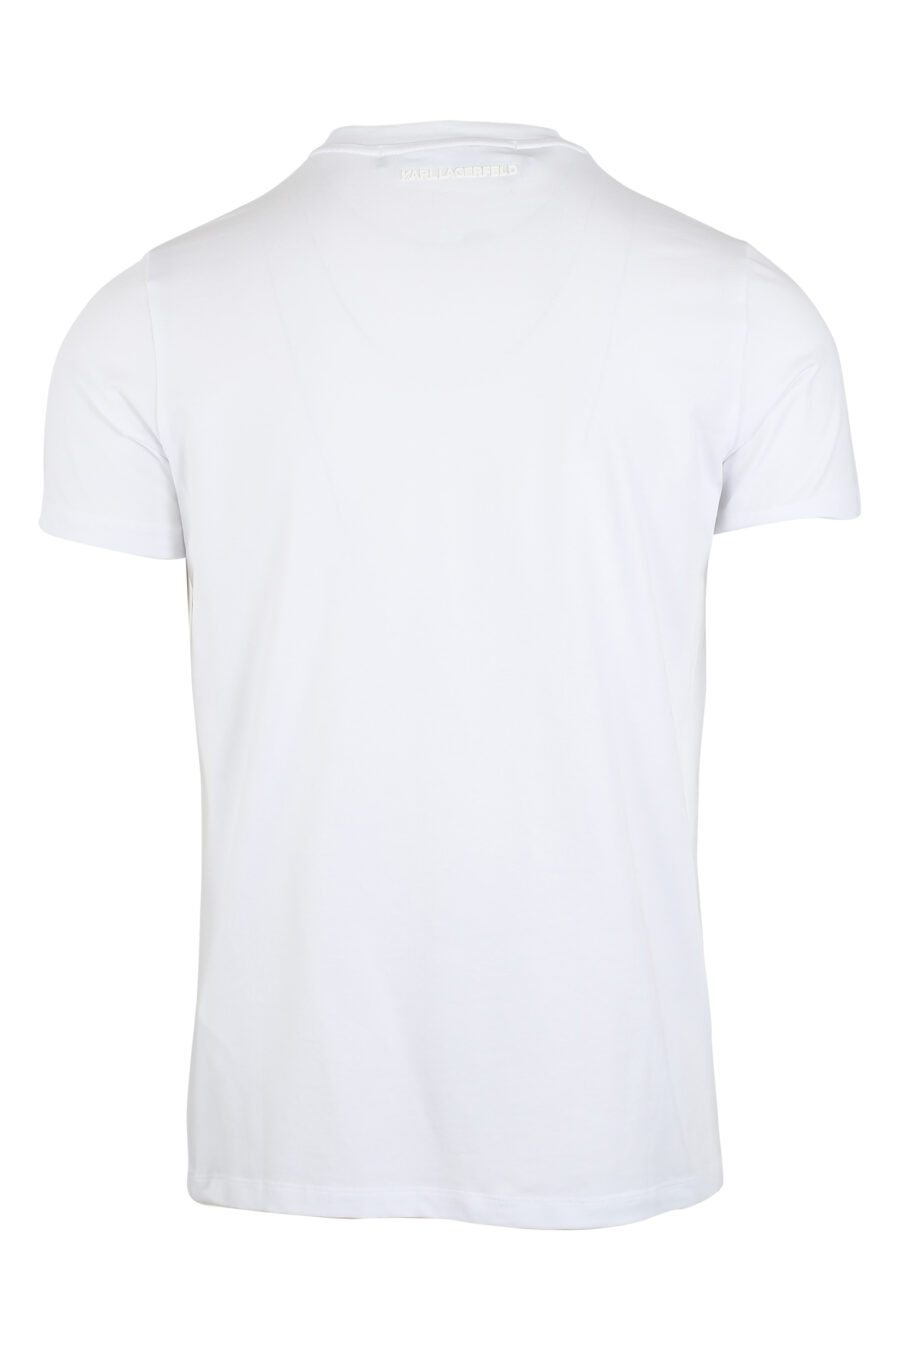 Weißes T-Shirt mit Hologramm-Effekt-Logo - IMG 9487